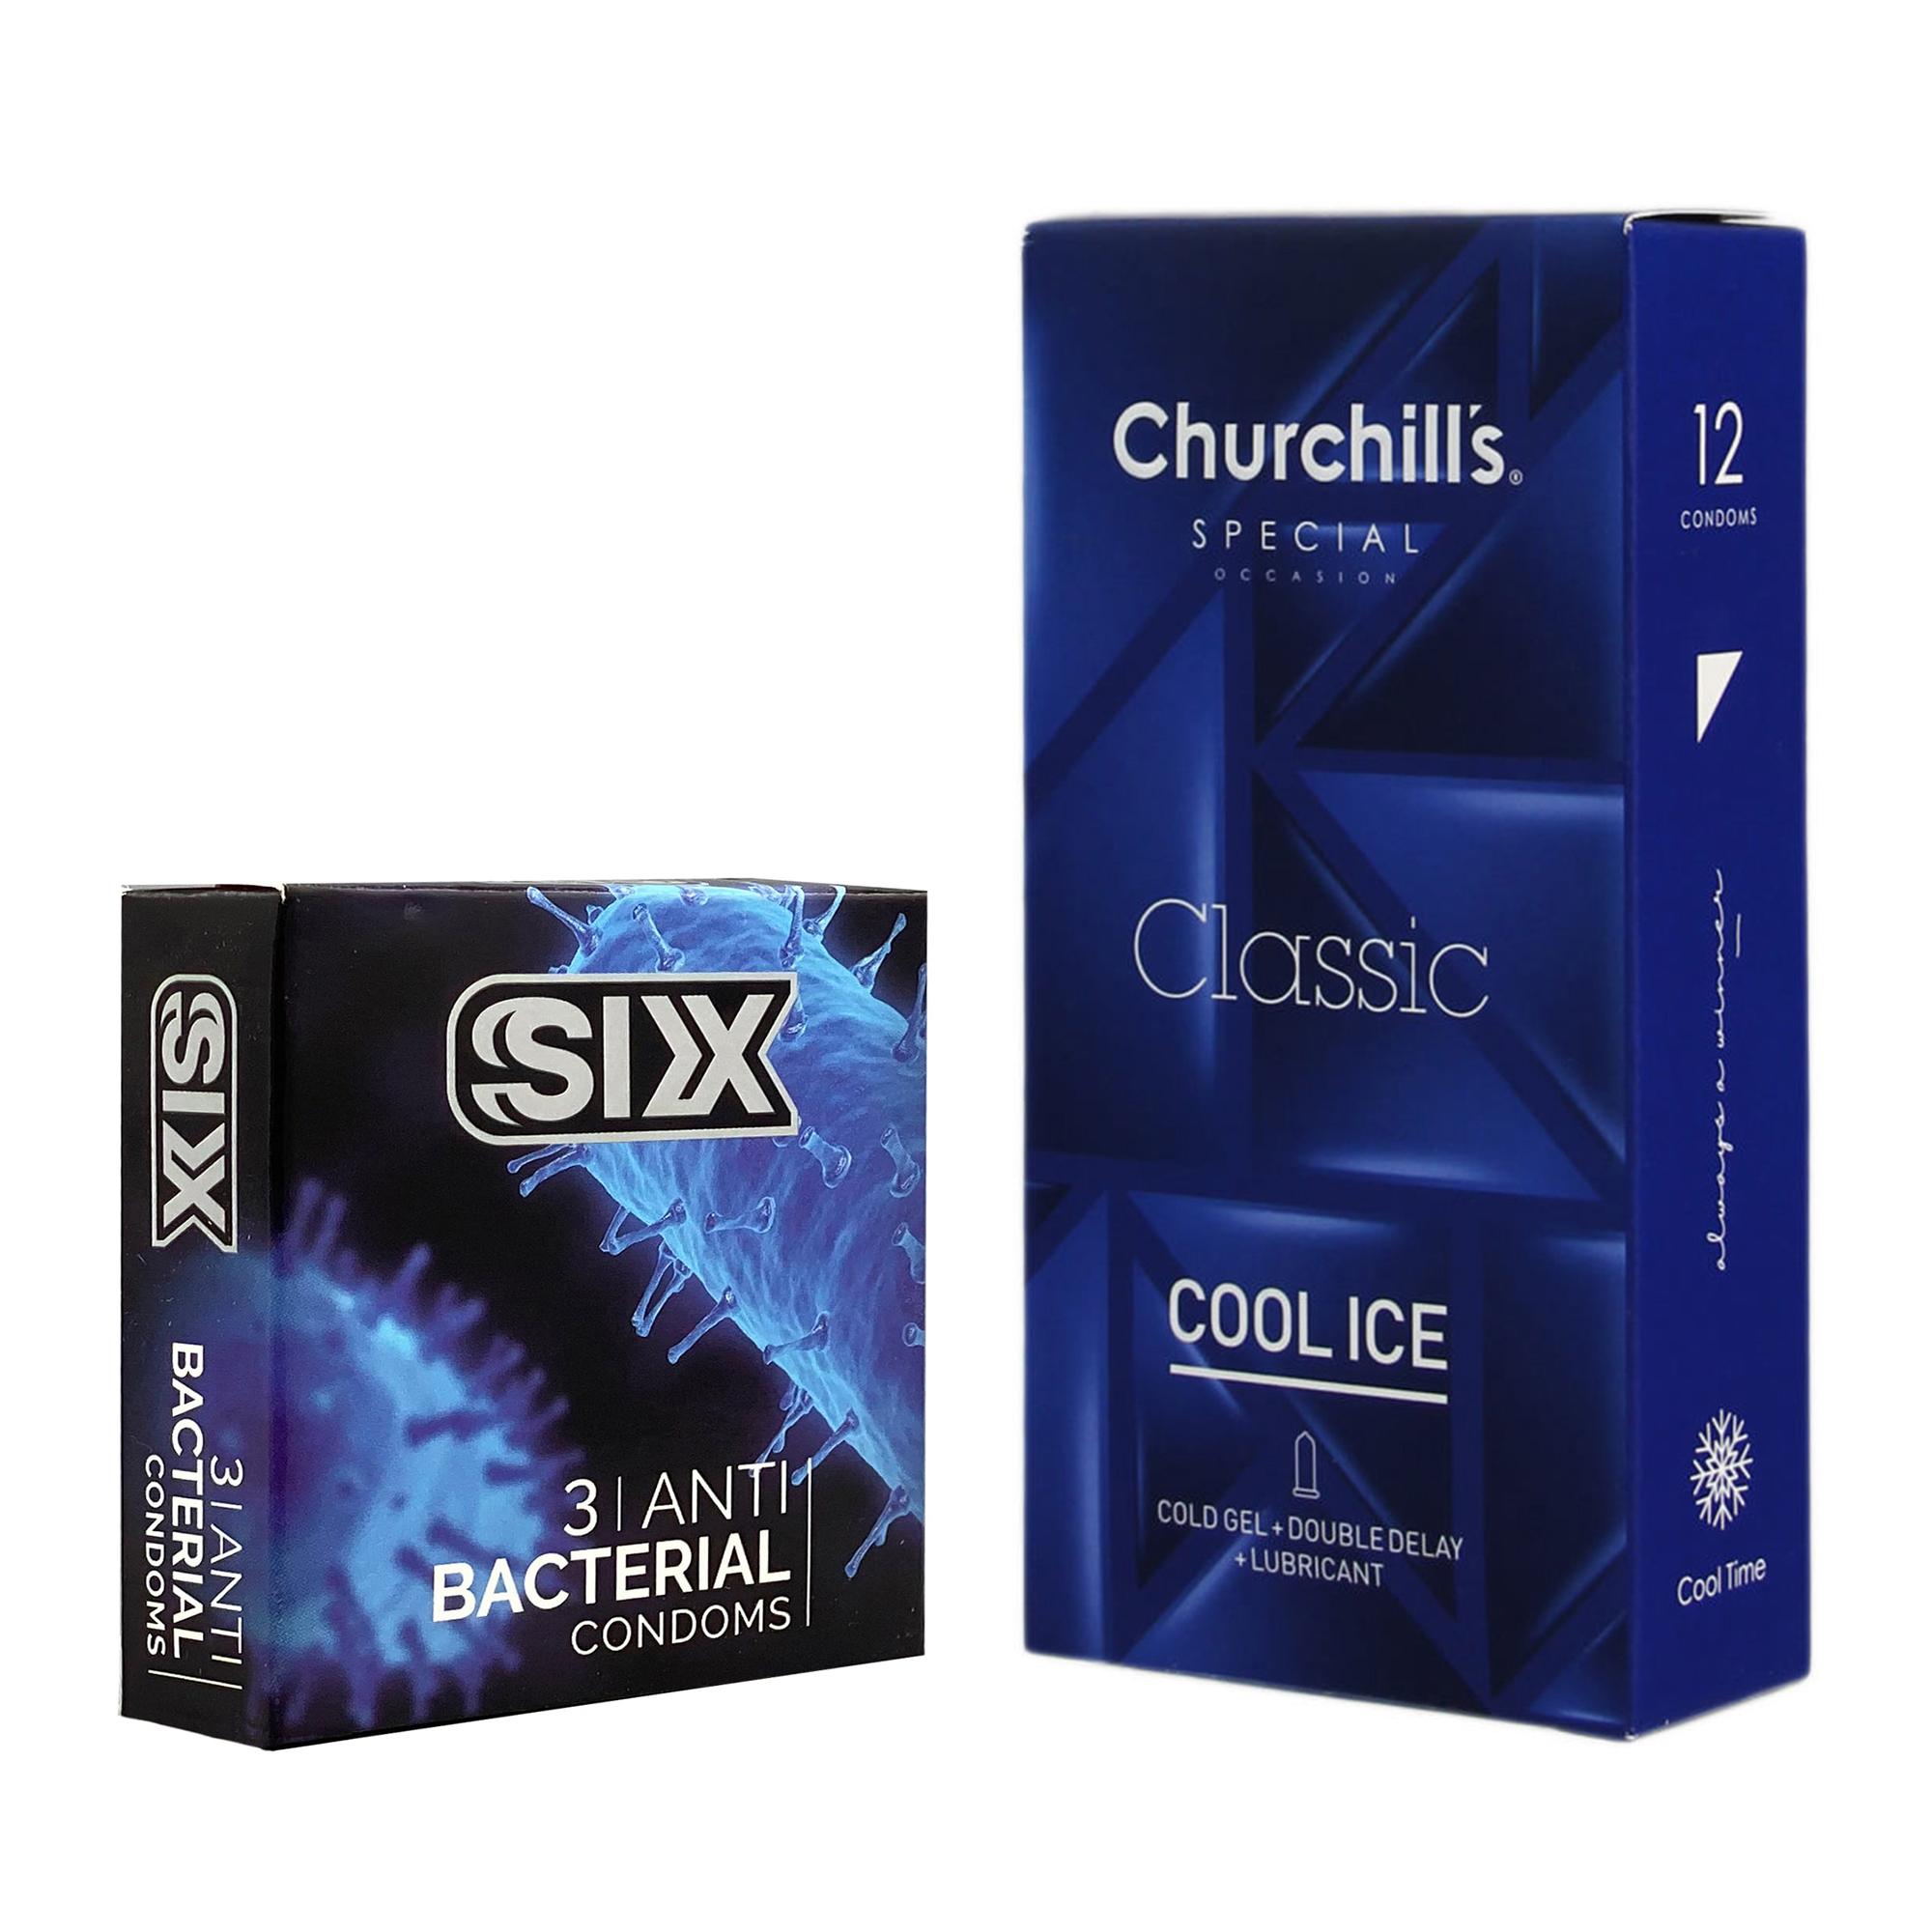 نکته خرید - قیمت روز کاندوم چرچیلز مدل Cool Ice بسته 12 عددی به همراه کاندوم سیکس مدل آنتی باکتریال بسته 3 عددی خرید